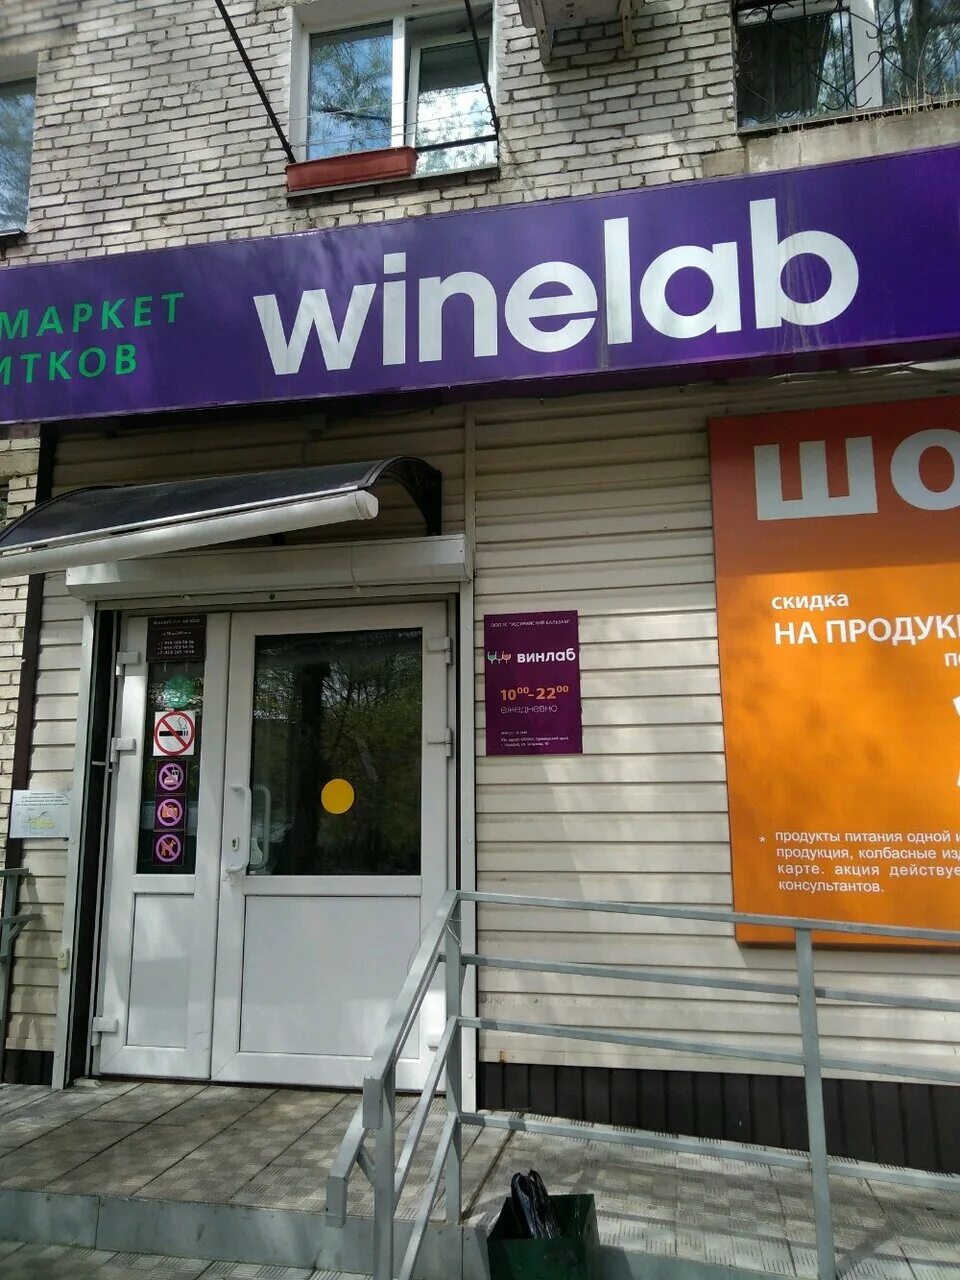 Винлаб. Винлаб магазин. Винлаб Хабаровск. Винлаб лого. Винлаб горячая линия